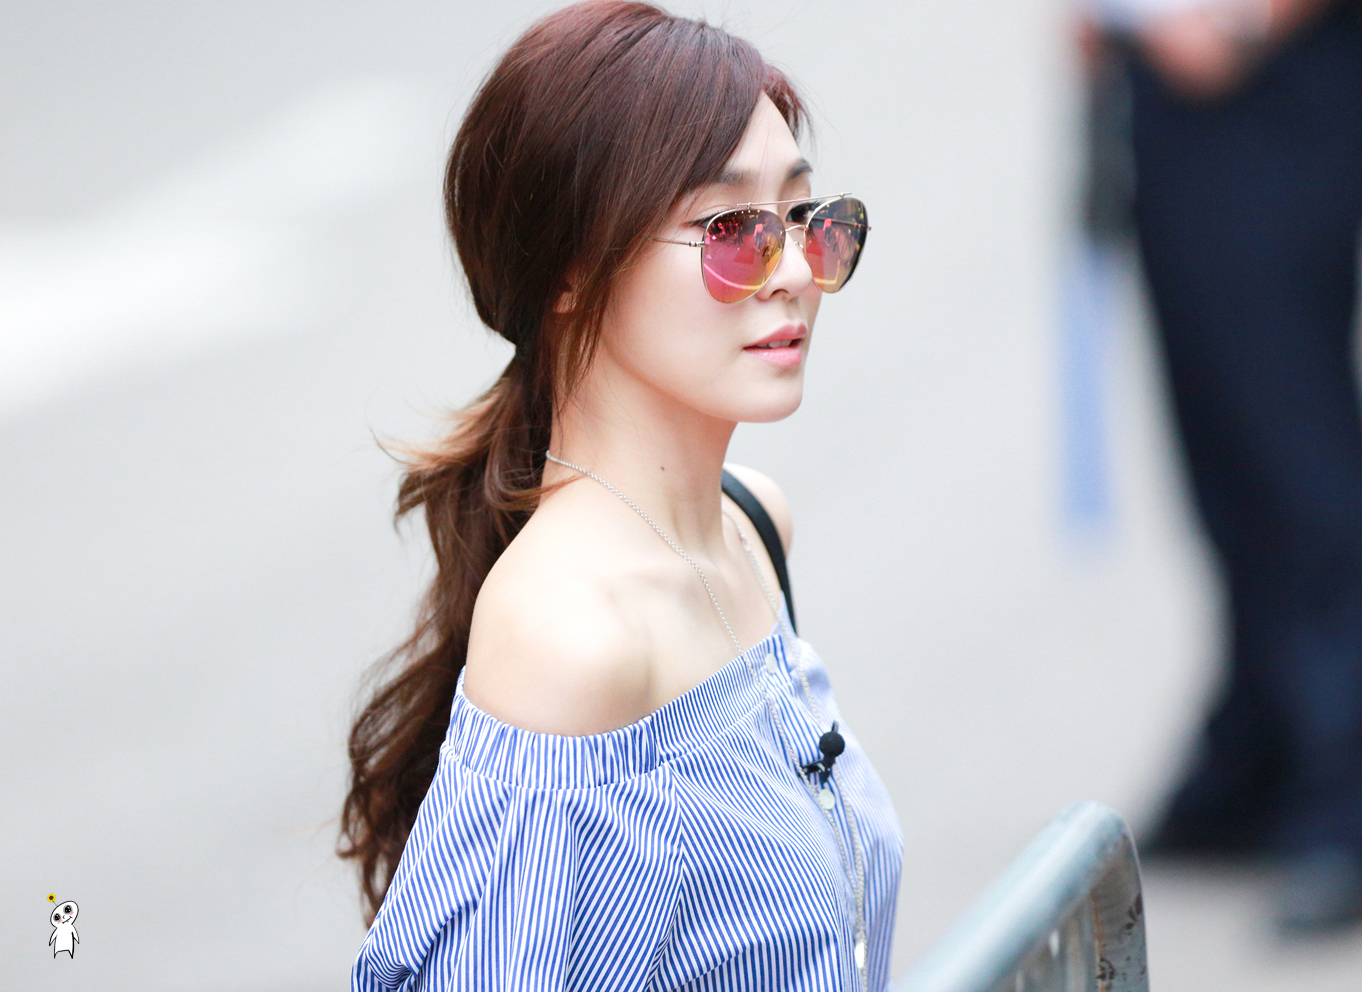 [PIC][01-07-2016]Tiffany xuất hiện tại tòa nhà KBS để quảng bá cho "SHUT UP" 2158003A5777852435DD31